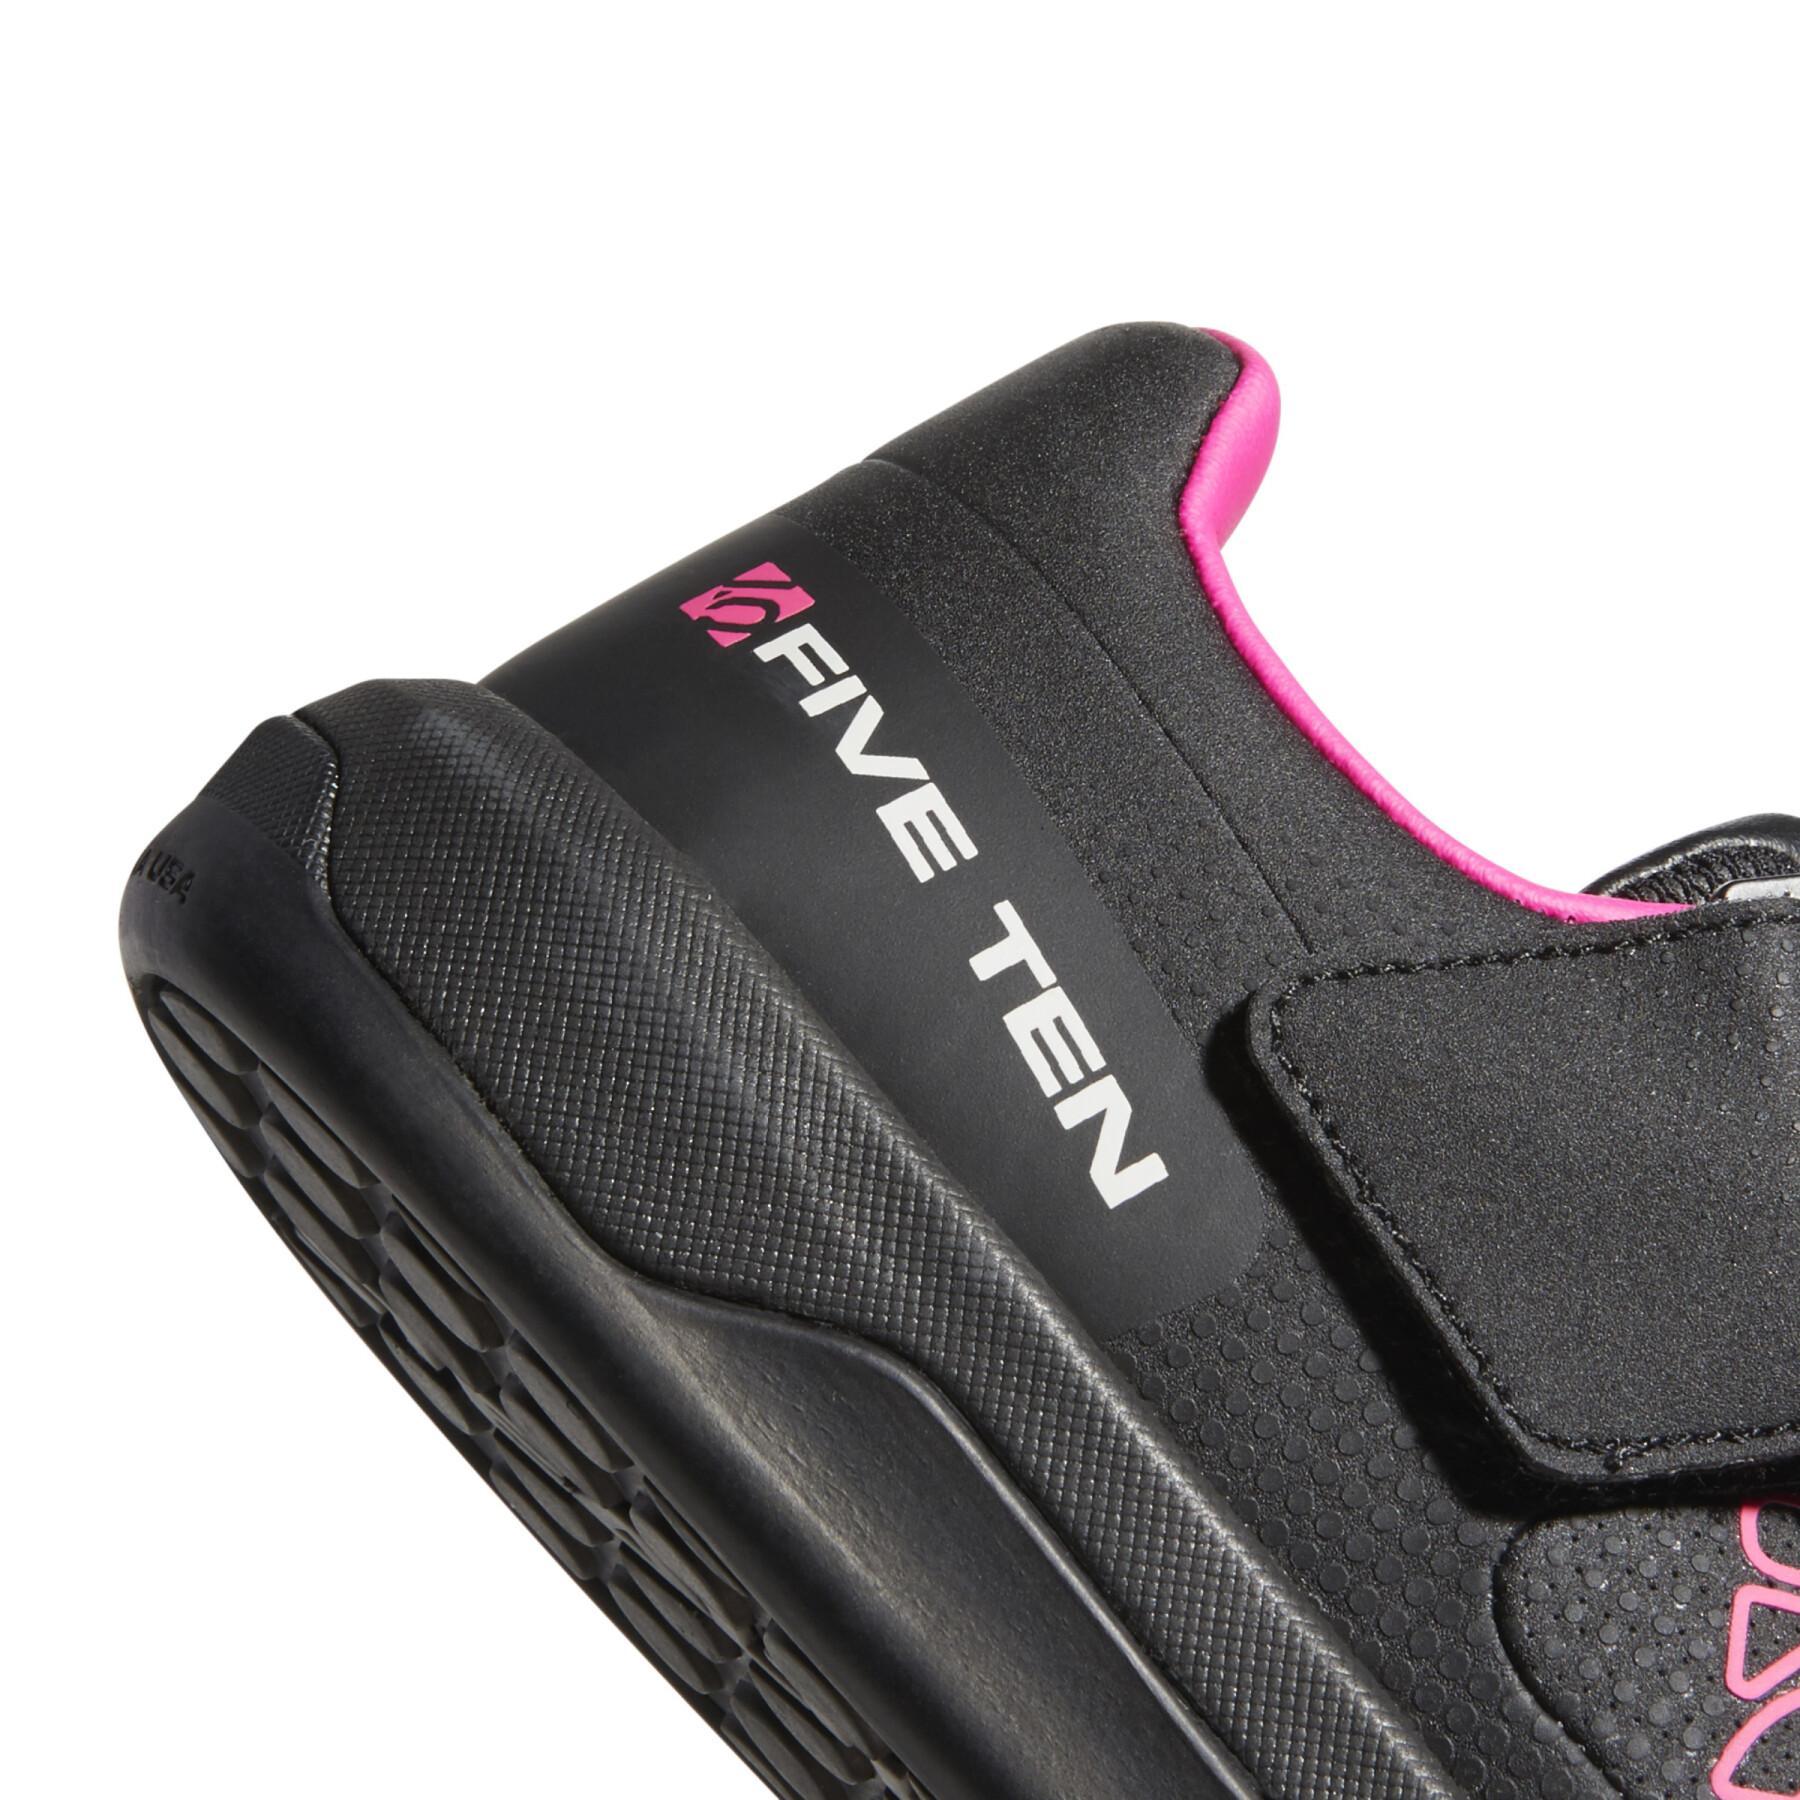 Women's mountain bike shoes adidas Five Ten Hellcat Pro